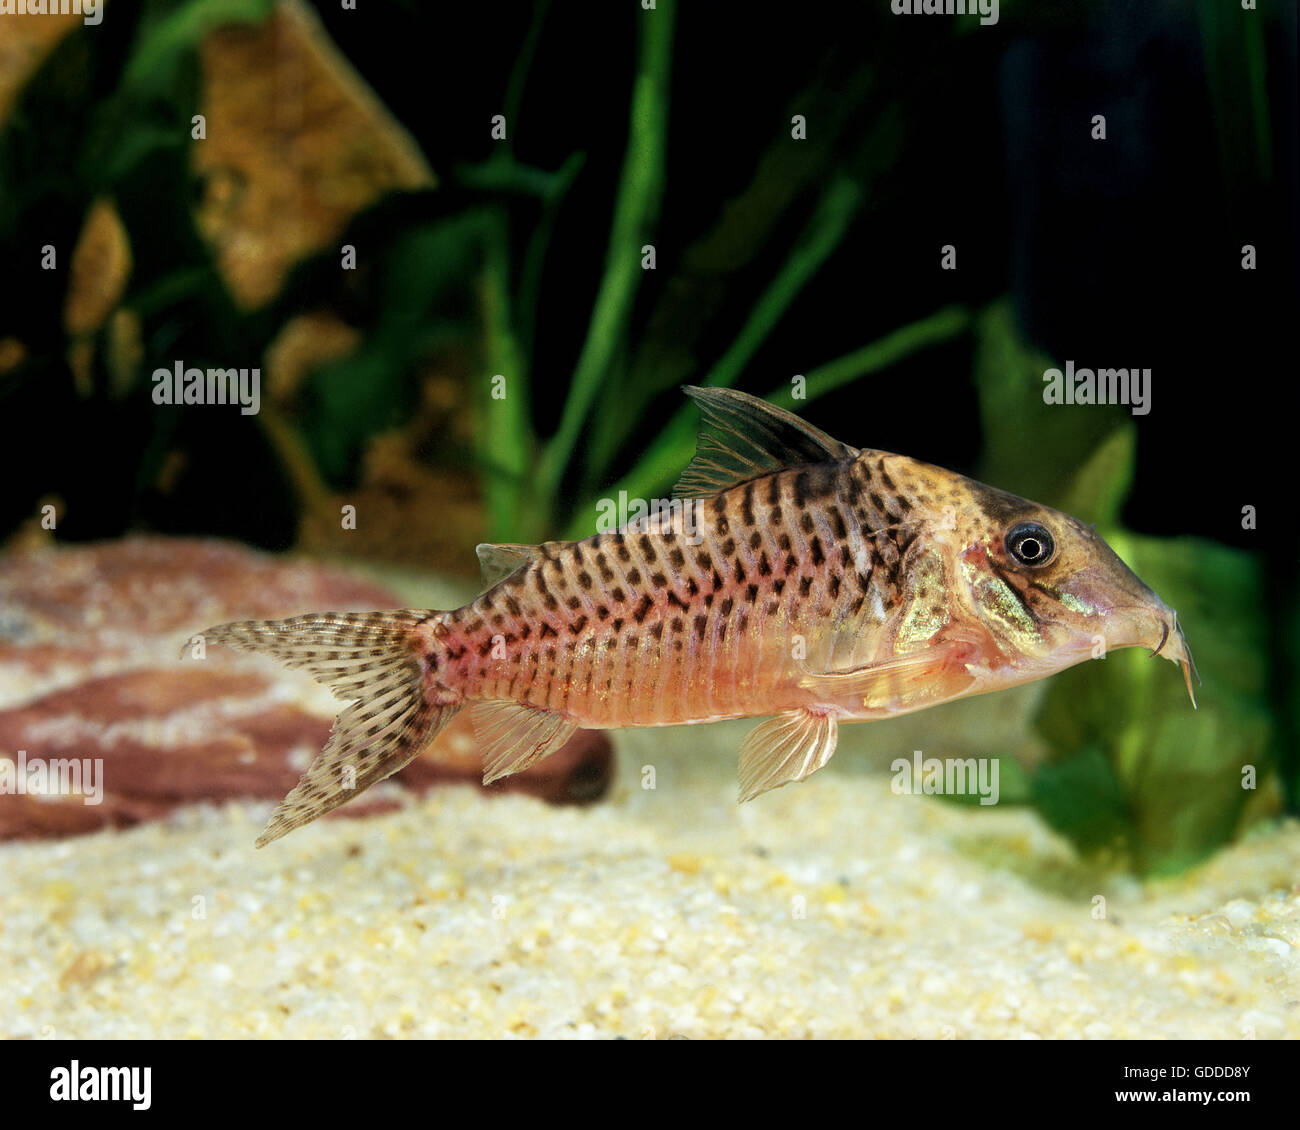 Corydoras Fish, corydoras blochi, Adult Stock Photo